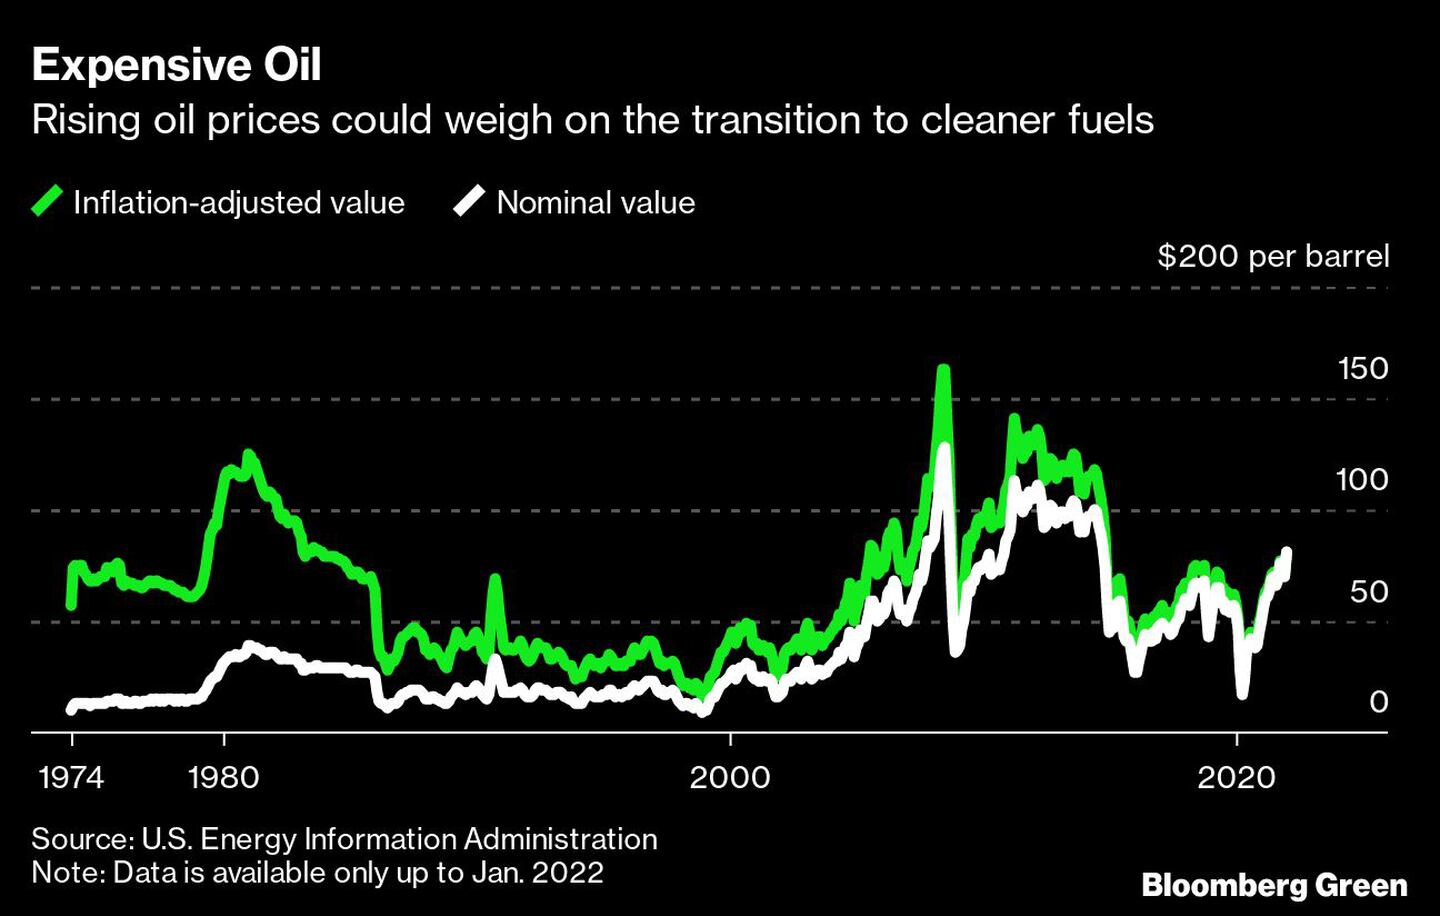 El aumento del precio del petróleo podría lastrar la transición a combustibles más limpios dfd